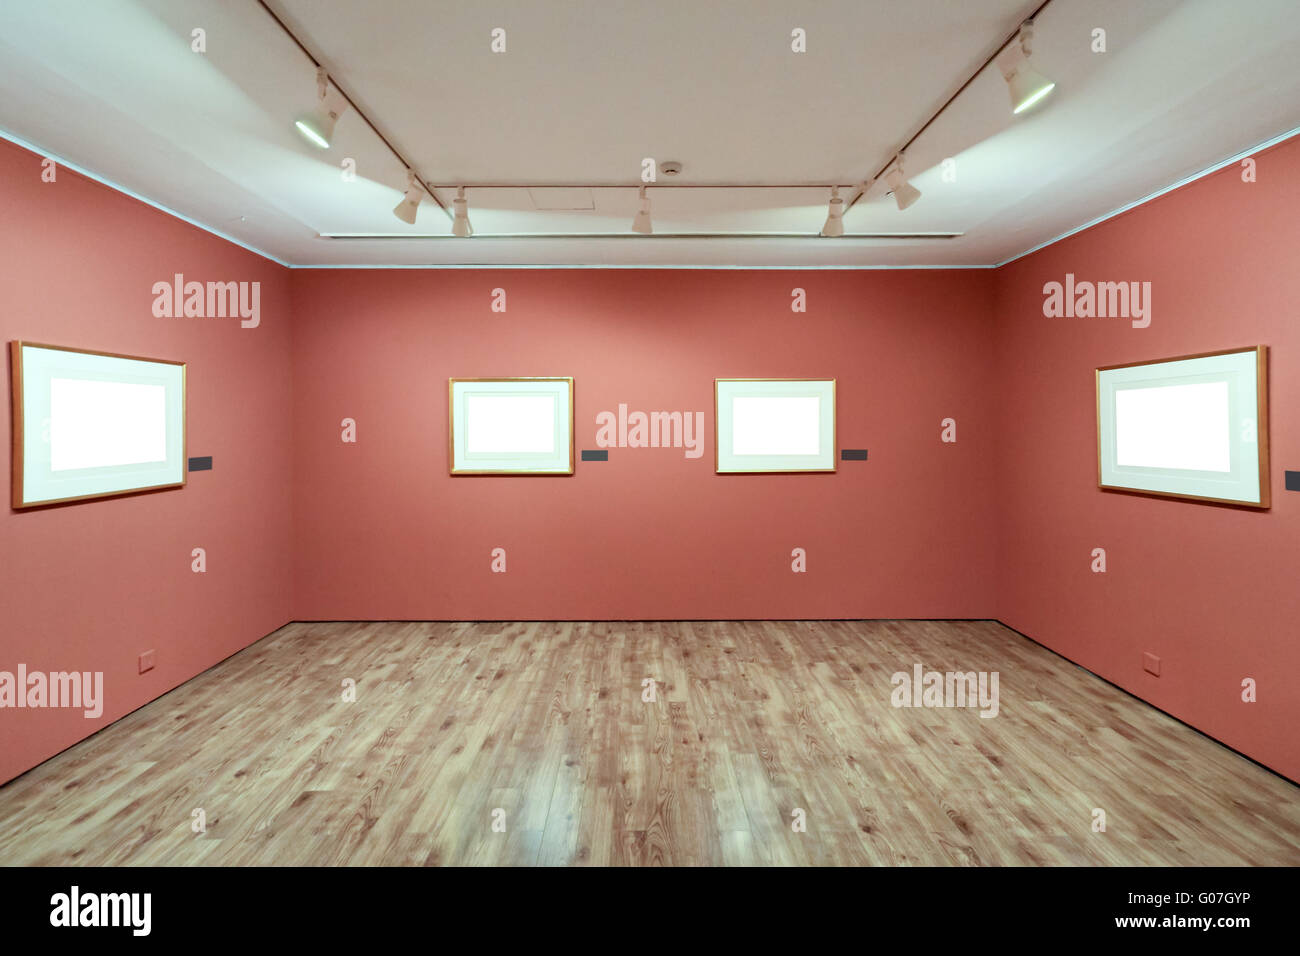 Marco de imagen en blanco en una habitación contra la pared de exhibición Foto de stock